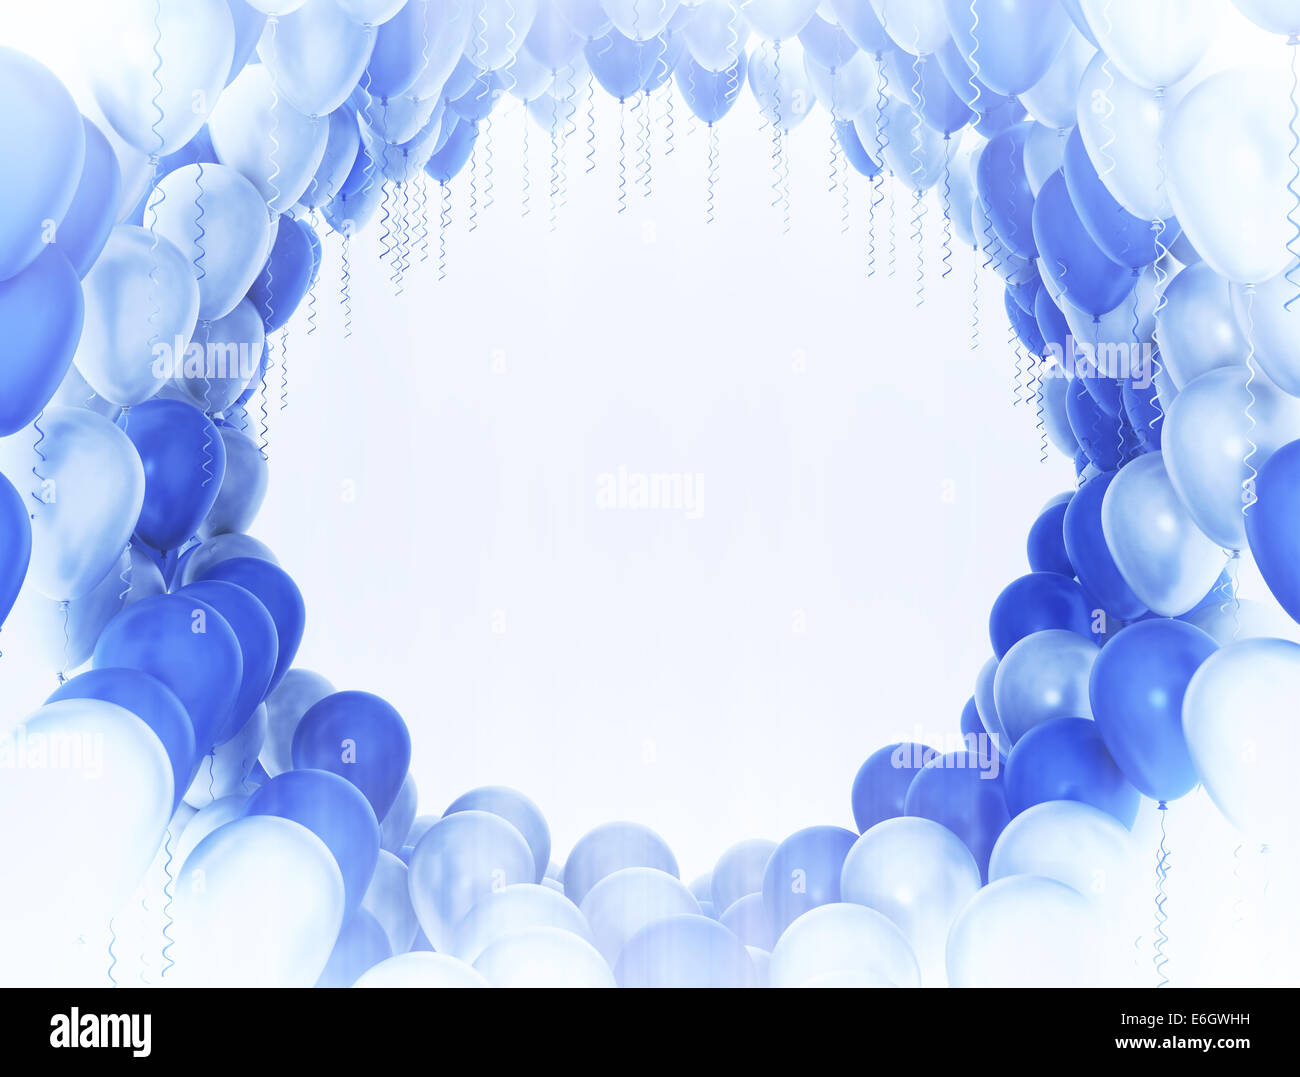 Célébration contexte. Ballons bleus et blancs Banque D'Images